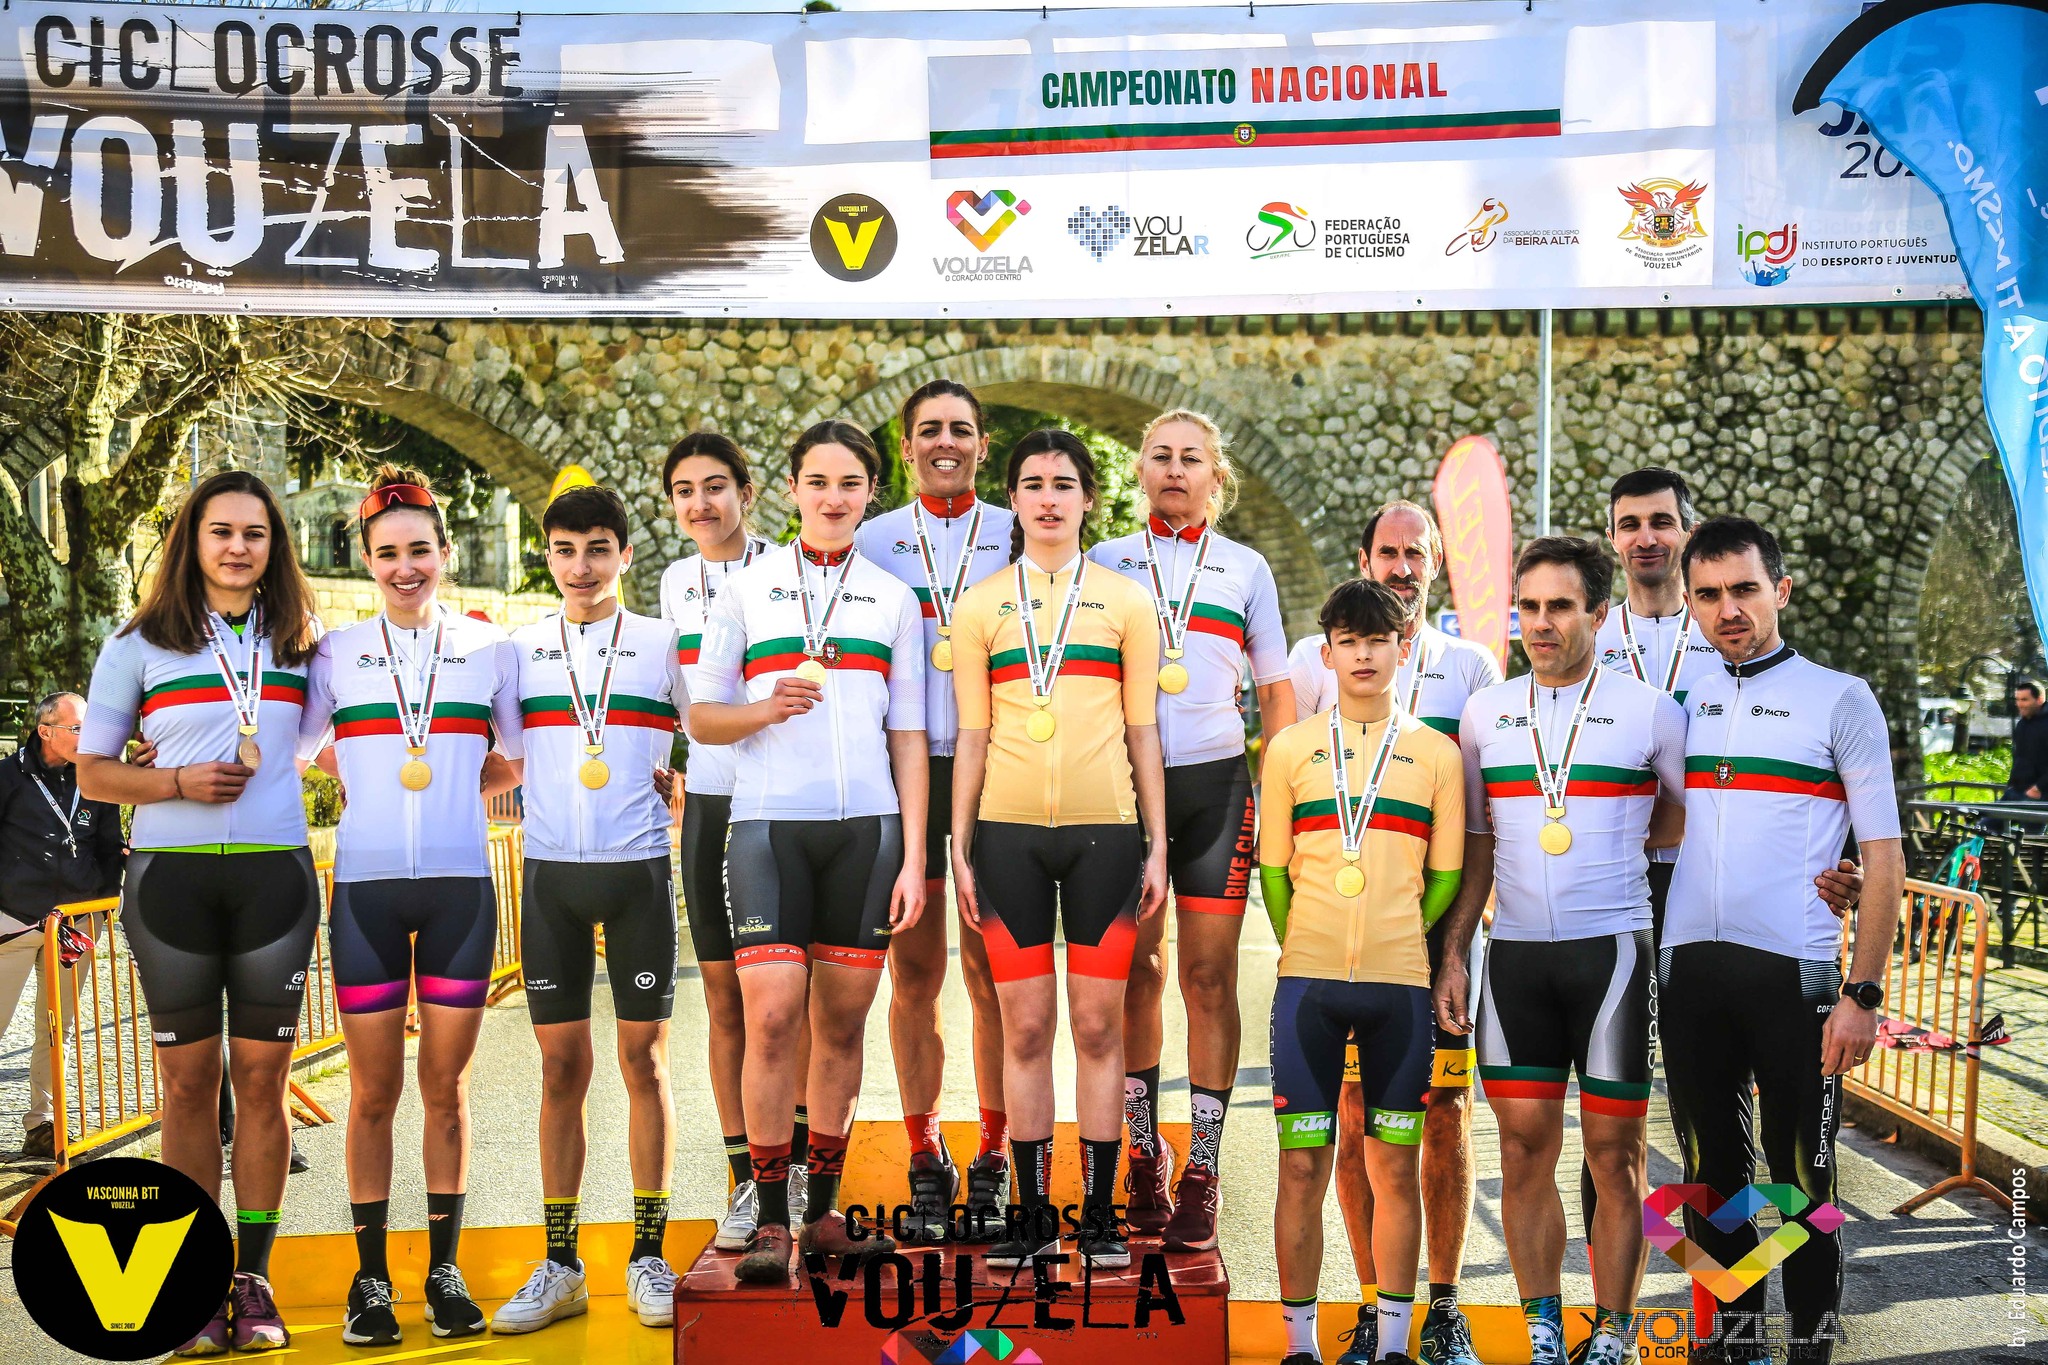 Roberto Ferreira e Ana Santos vencem Títulos Nacionais de Ciclocrosse!